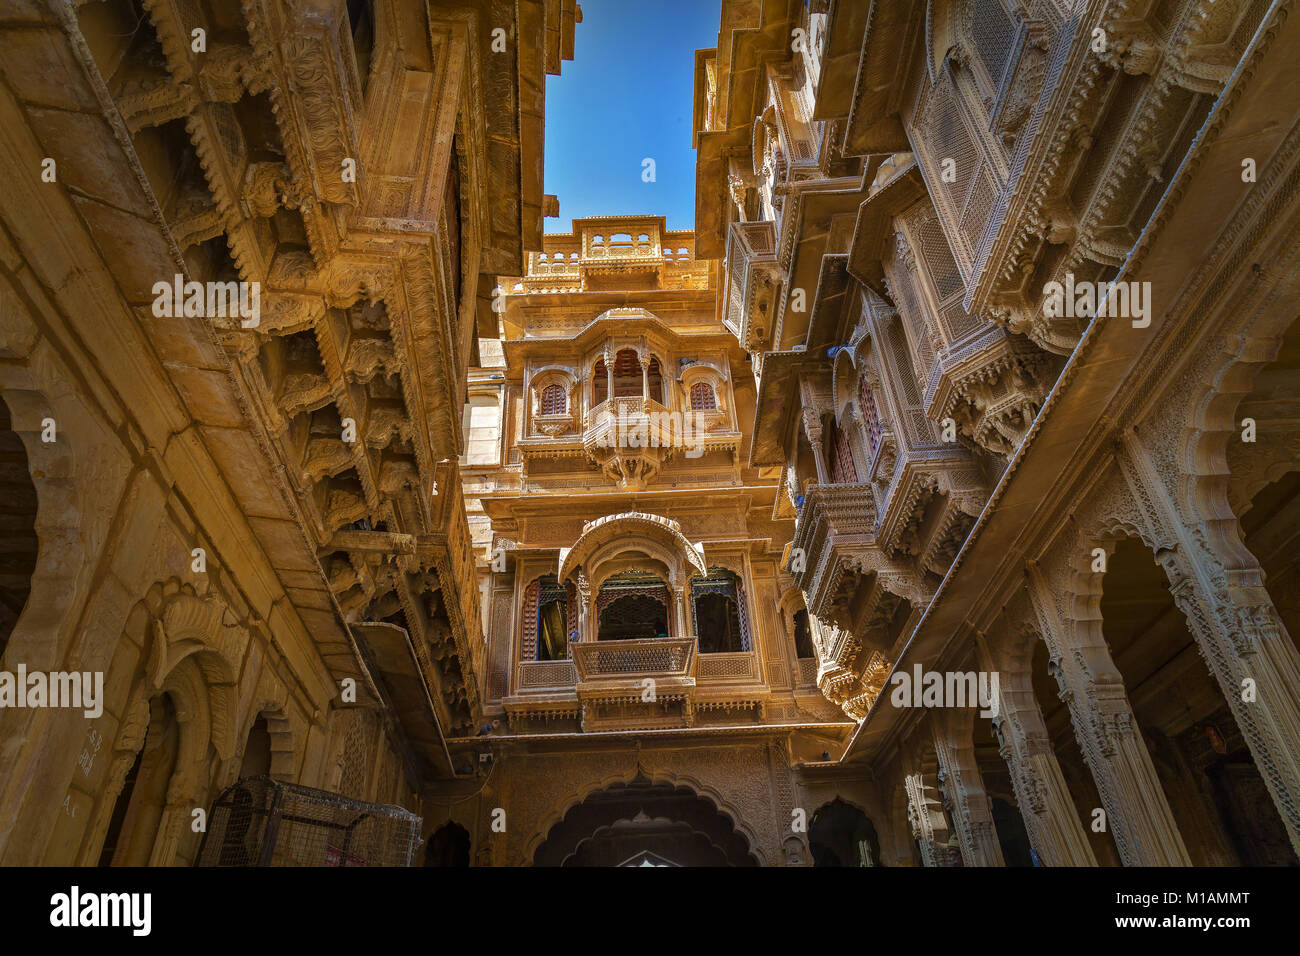 Rajasthan heritage Building - Patwon ki Haveli. Eine schön gestaltete königliche Residenzschloss Gebäude in Jaisalmer, Rajasthan. Stockfoto